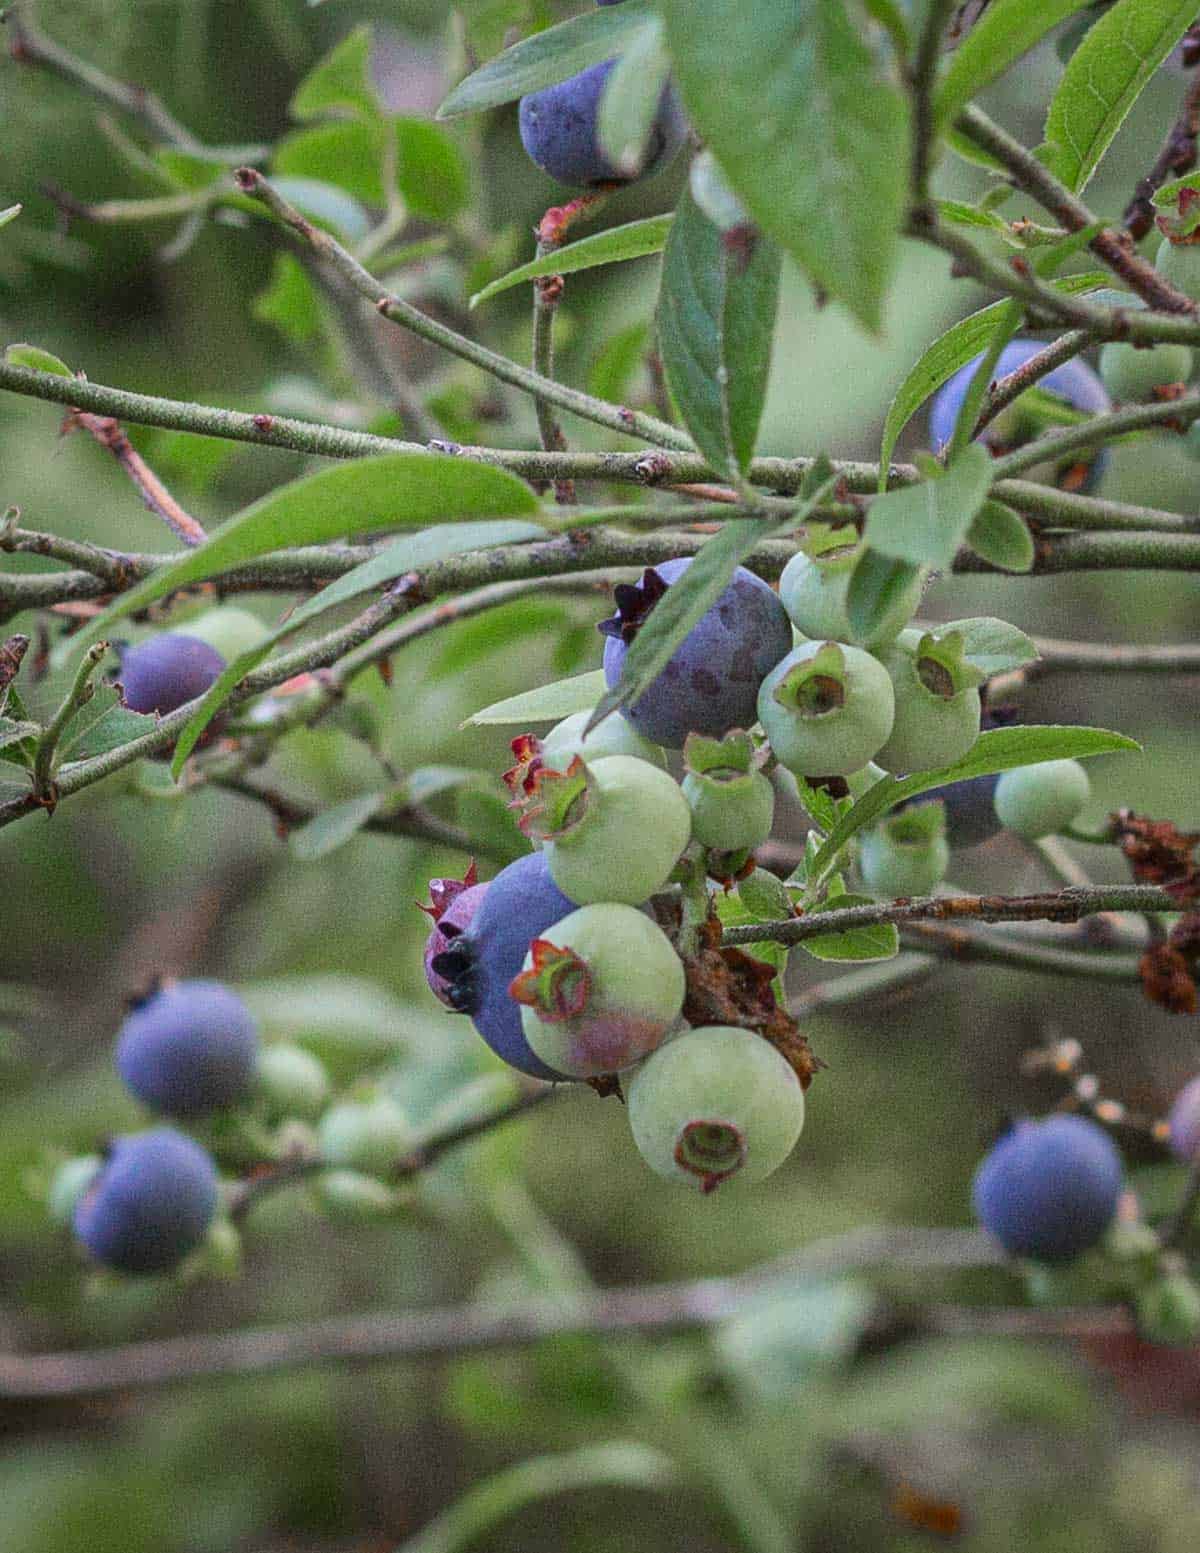 Ripe and unripe wild blueberries (Vaccinium angustifolium). 